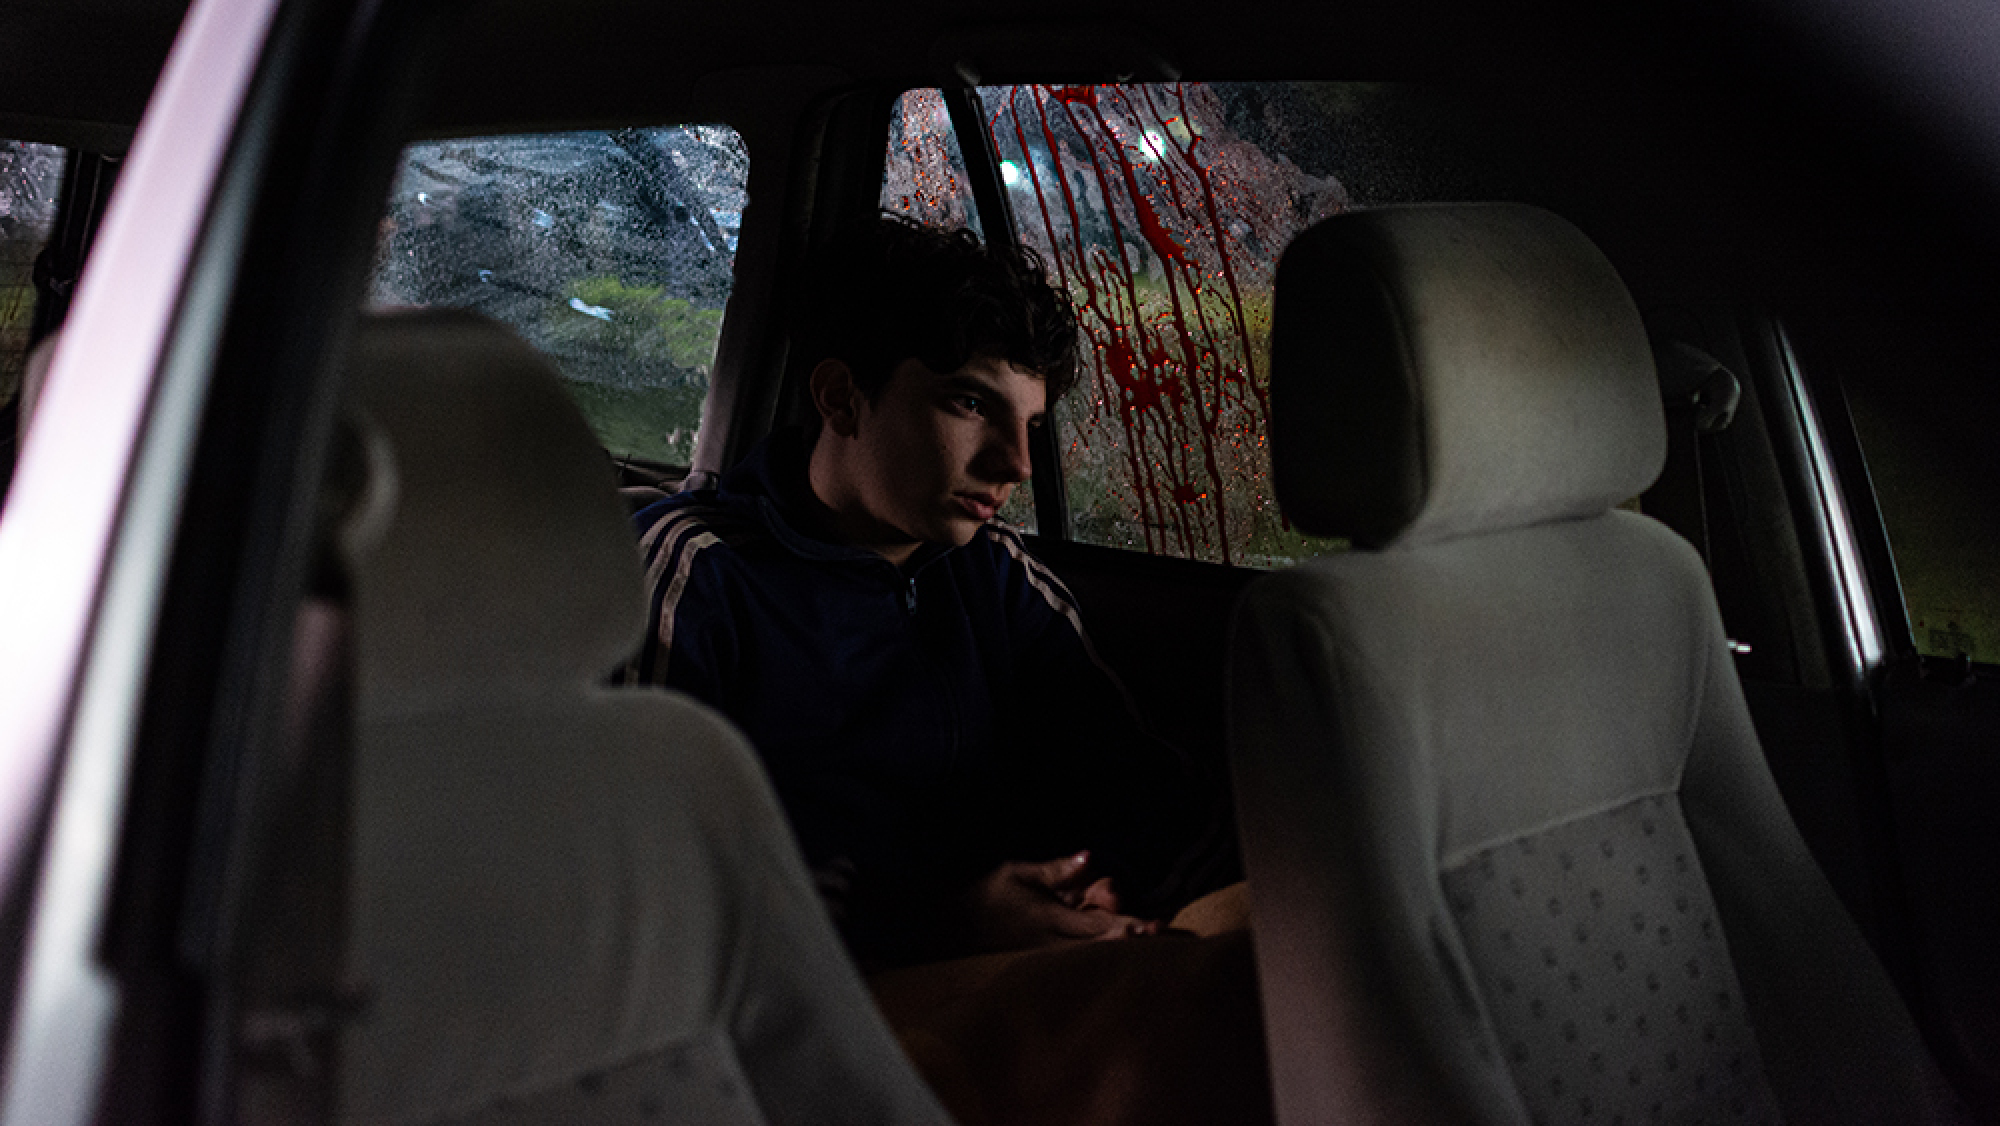 Un jeune garçon est assis à l’arrière d’une voiture avec une tache de sang sur la vitre.